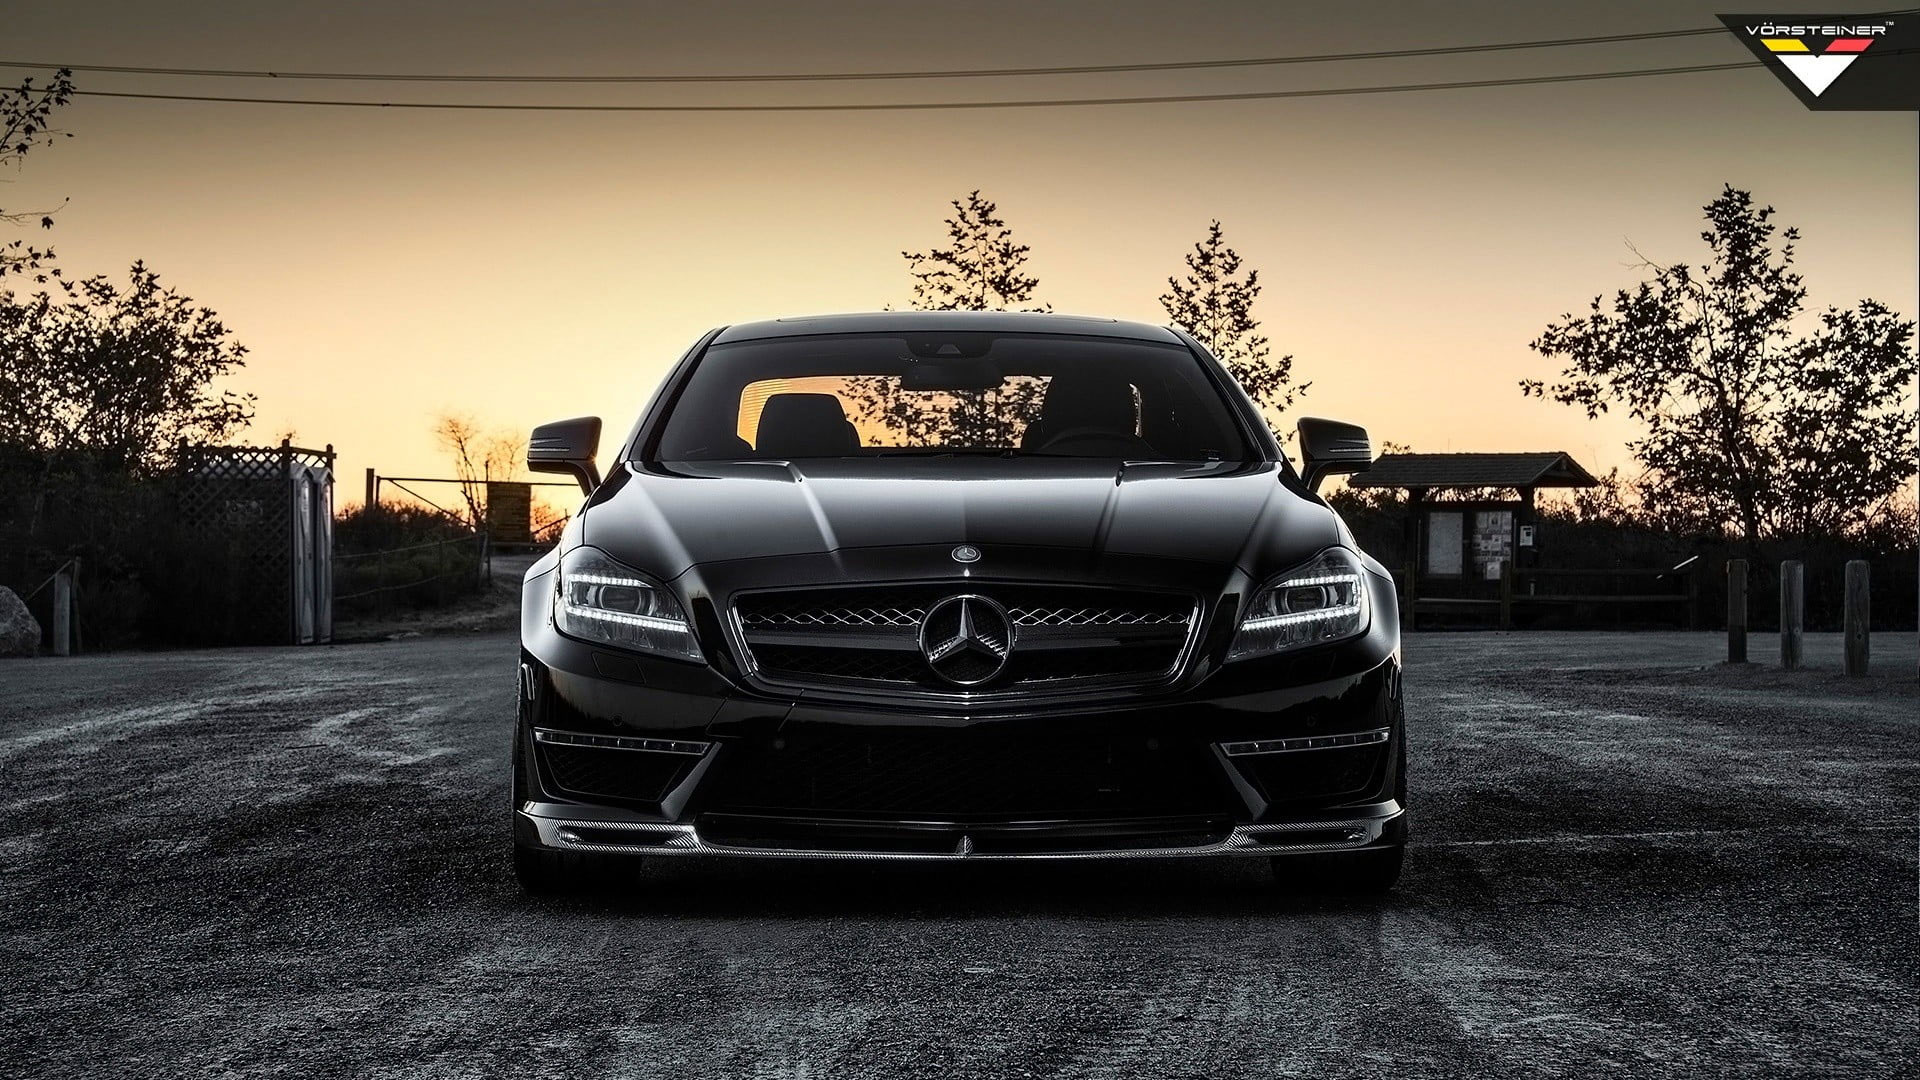 Black Mercedes-Benz car wallpaper, Mercedes-Benz CLS 63 AMG, vehicle, black cars